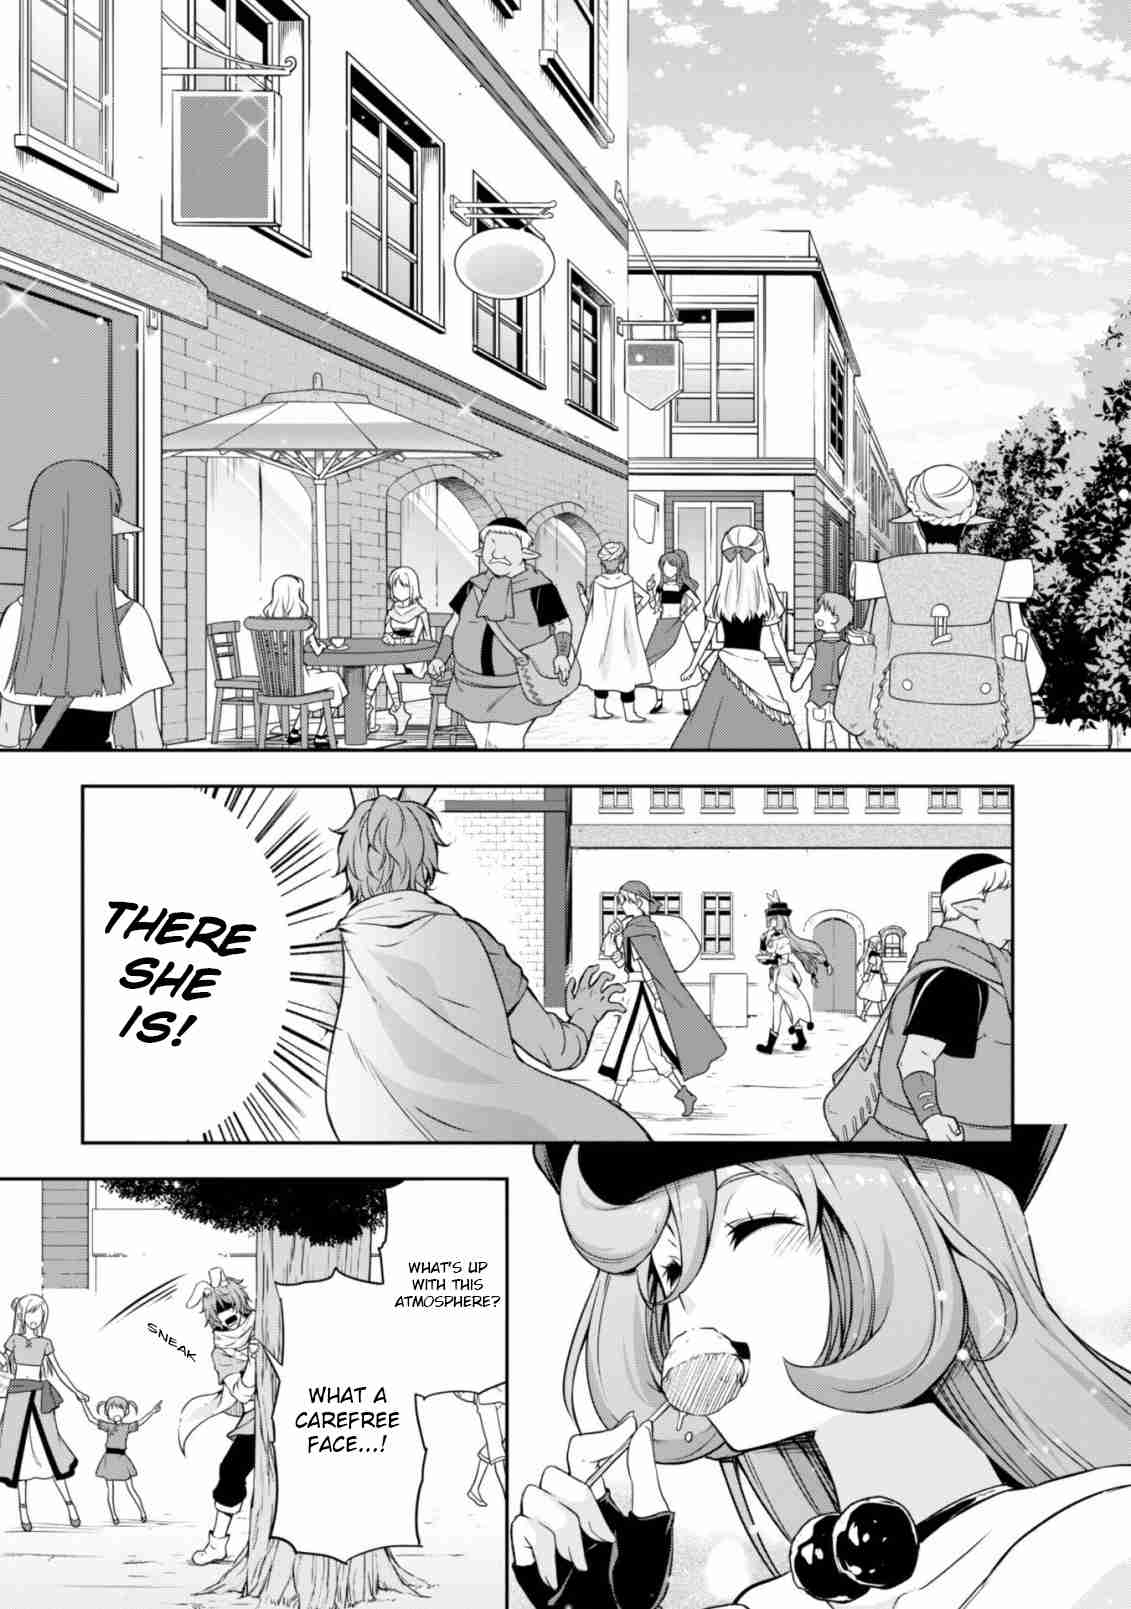 Tensei Shitara Slime Datta Ken: Mamono no Kuni no Arukikata Vol. 6 Ch. 34 (36) Rabbitman Village ☆ 3 Stars?